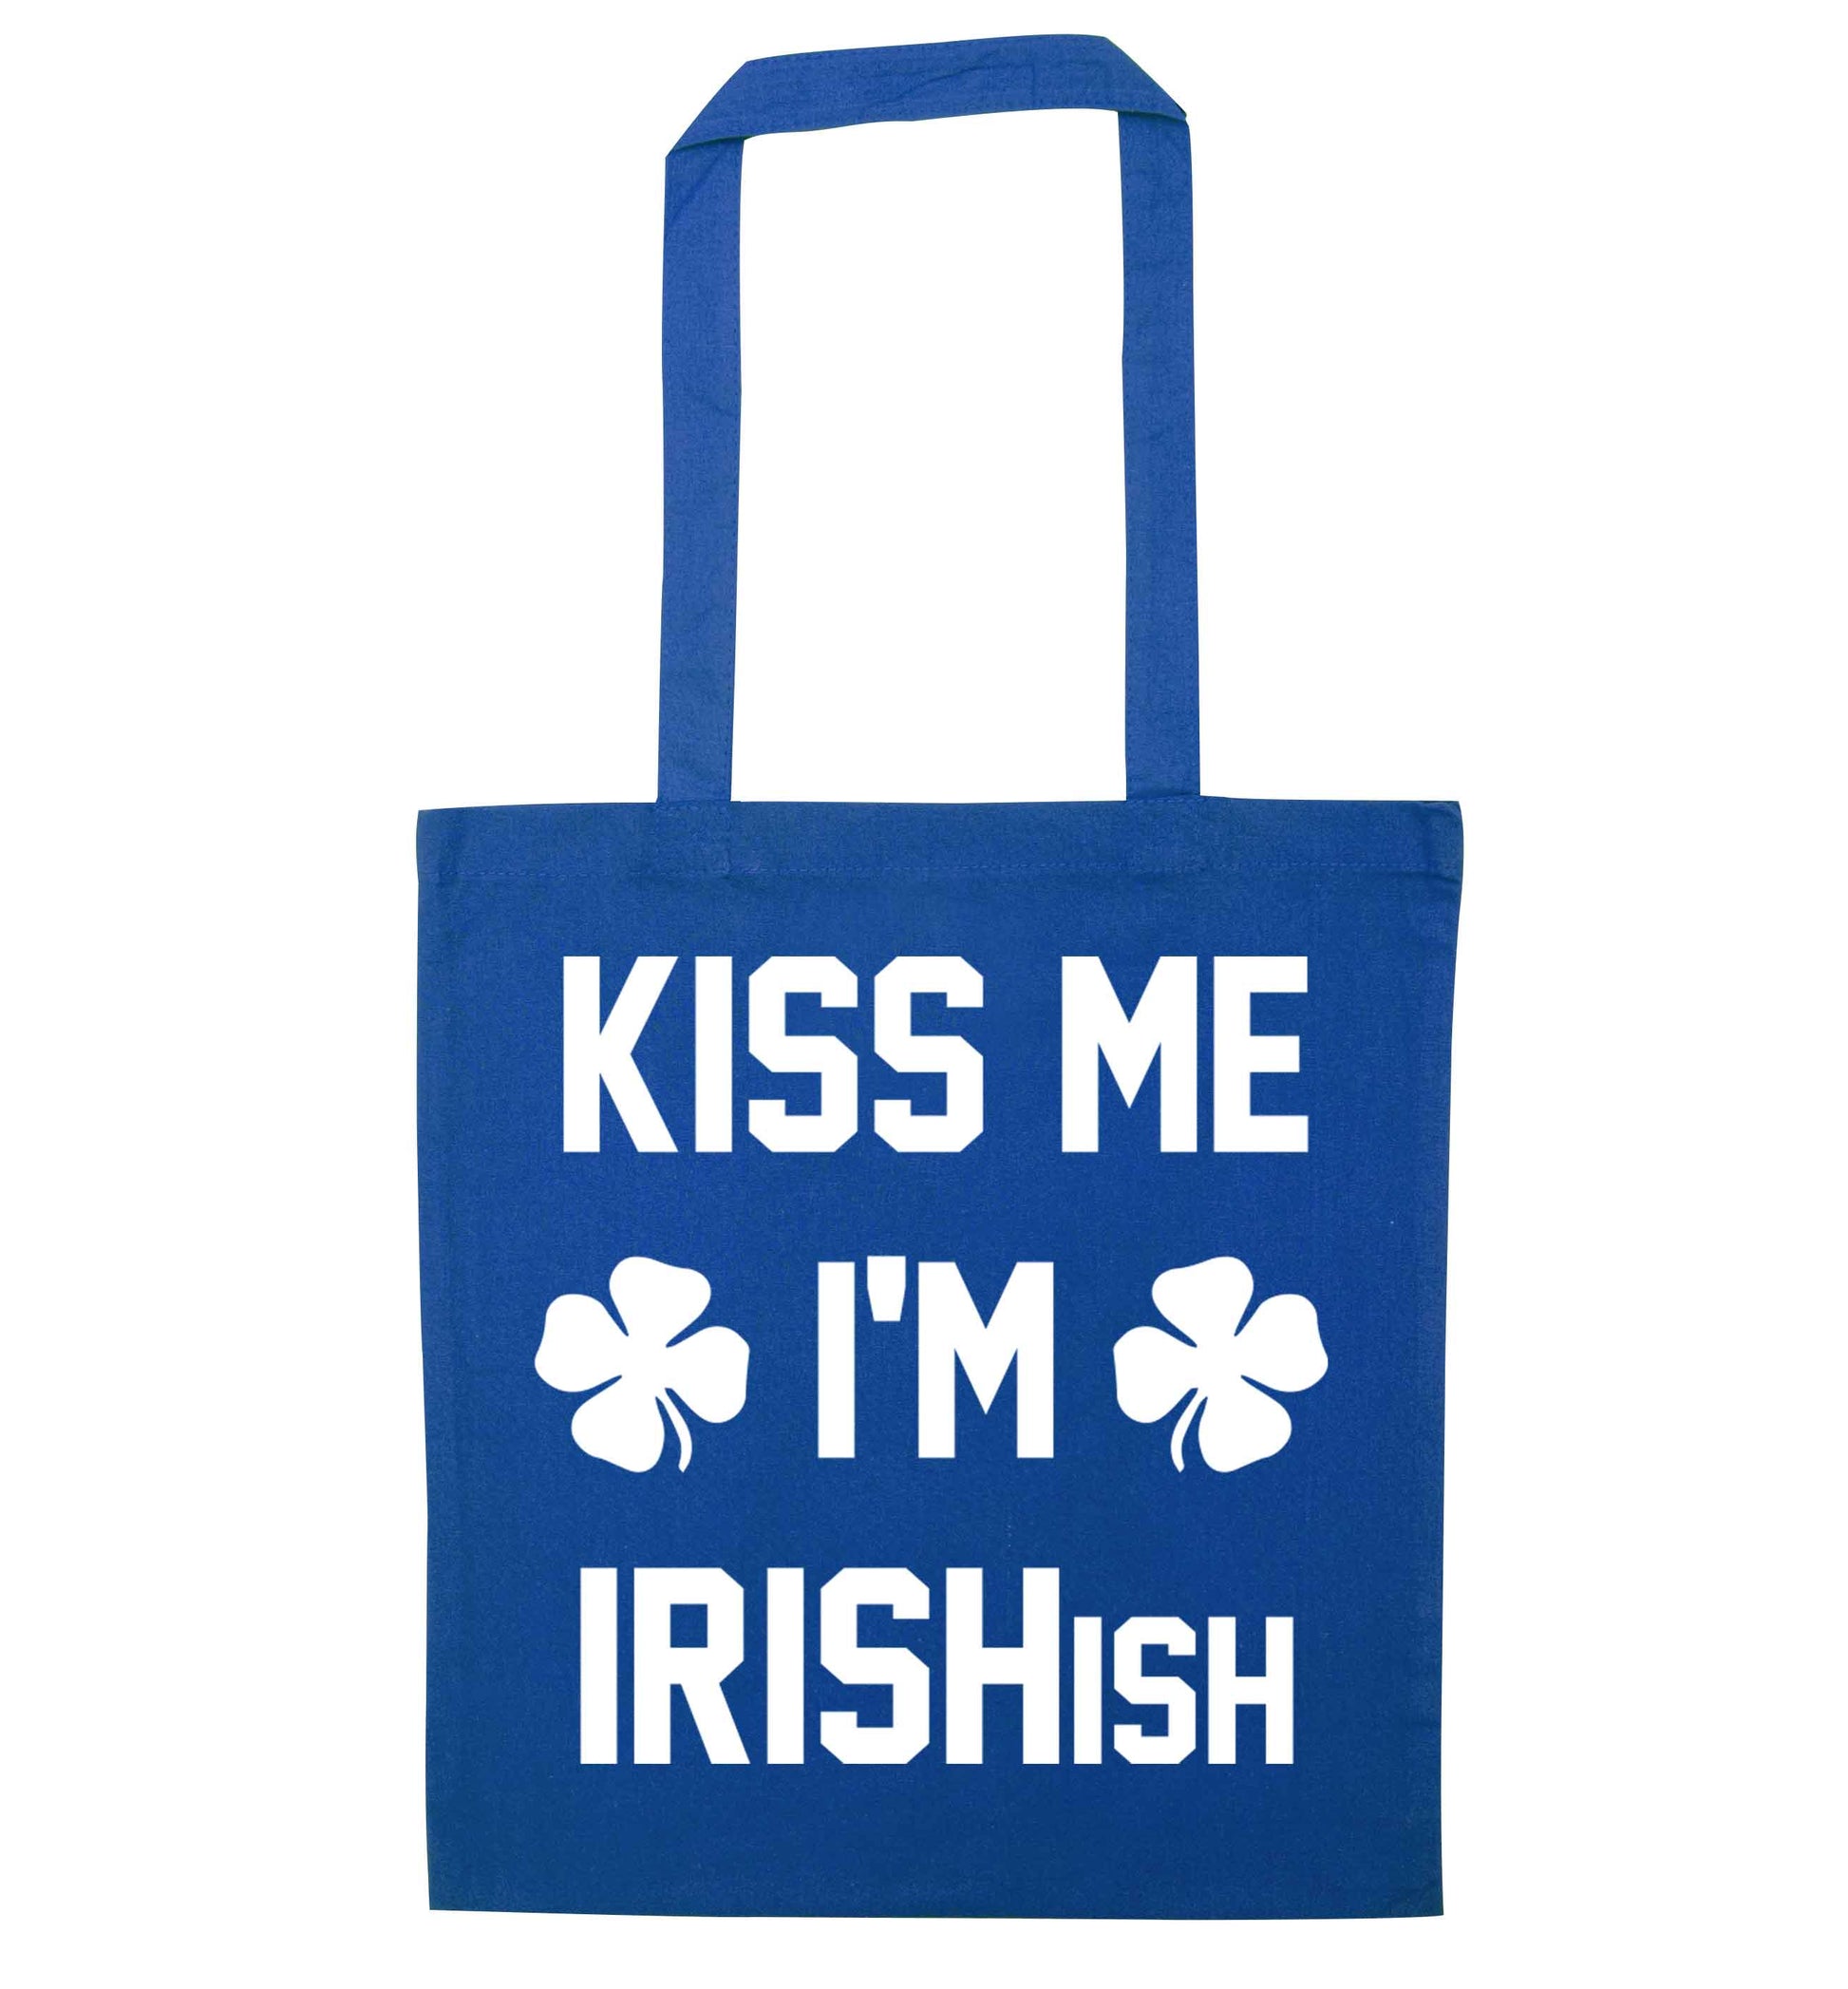 Kiss me I'm Irishish blue tote bag